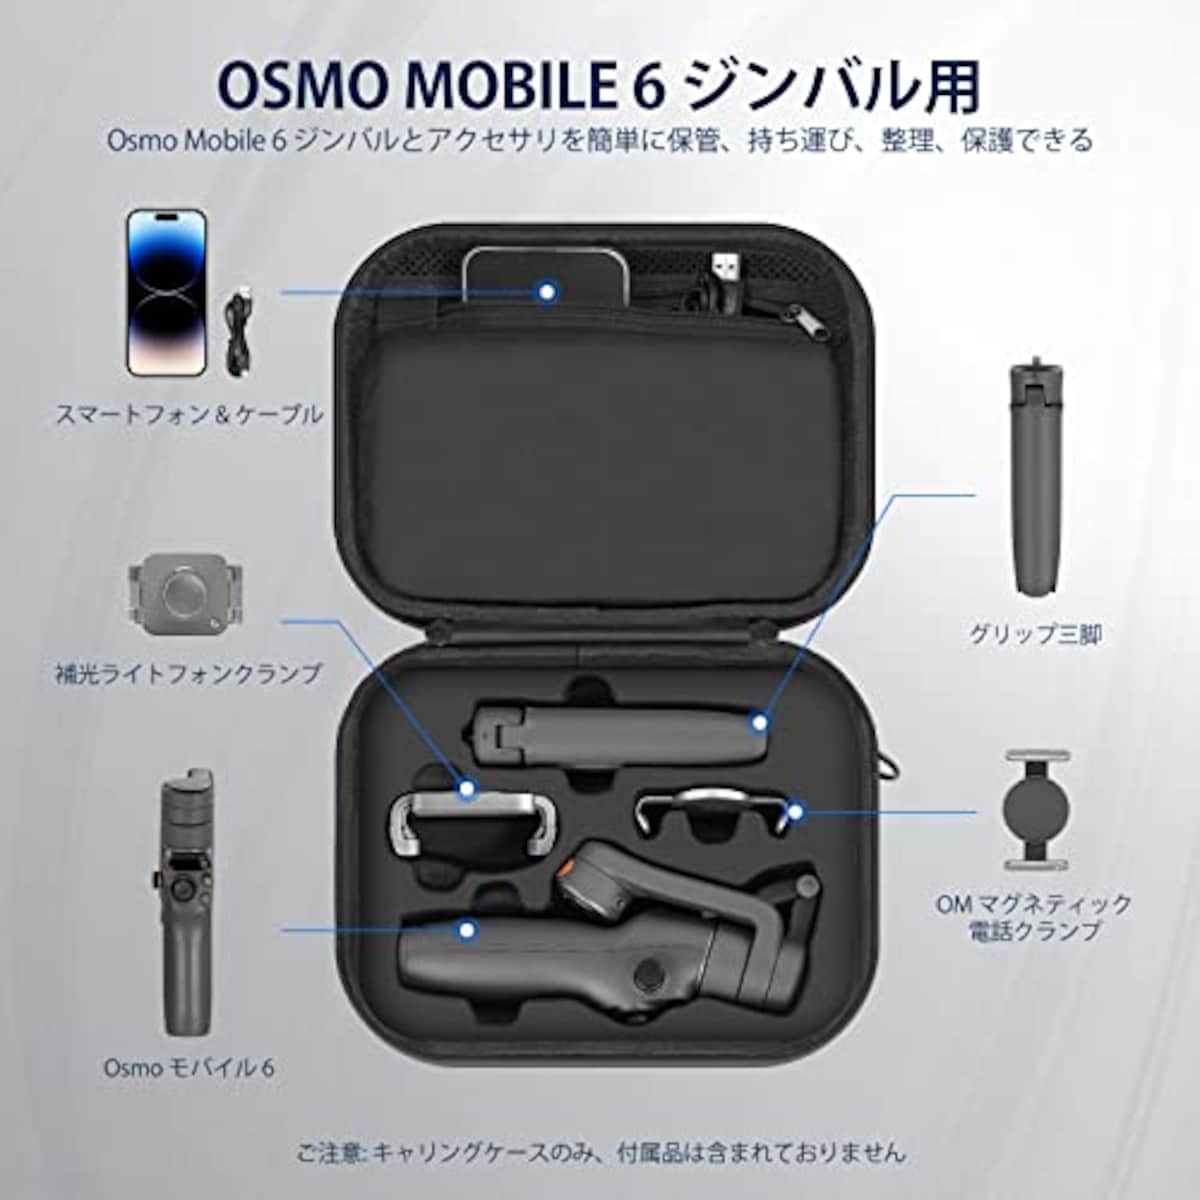  NEEWER 防水収納ケース Osmo Mobile 6用 ポータブルショルダーバッグ トラベルケース 内ポケットと耐衝撃クッション付き DJI Osmo Mobile 6ジンバルスタビライザーアクセサリーに対応 PB002画像2 